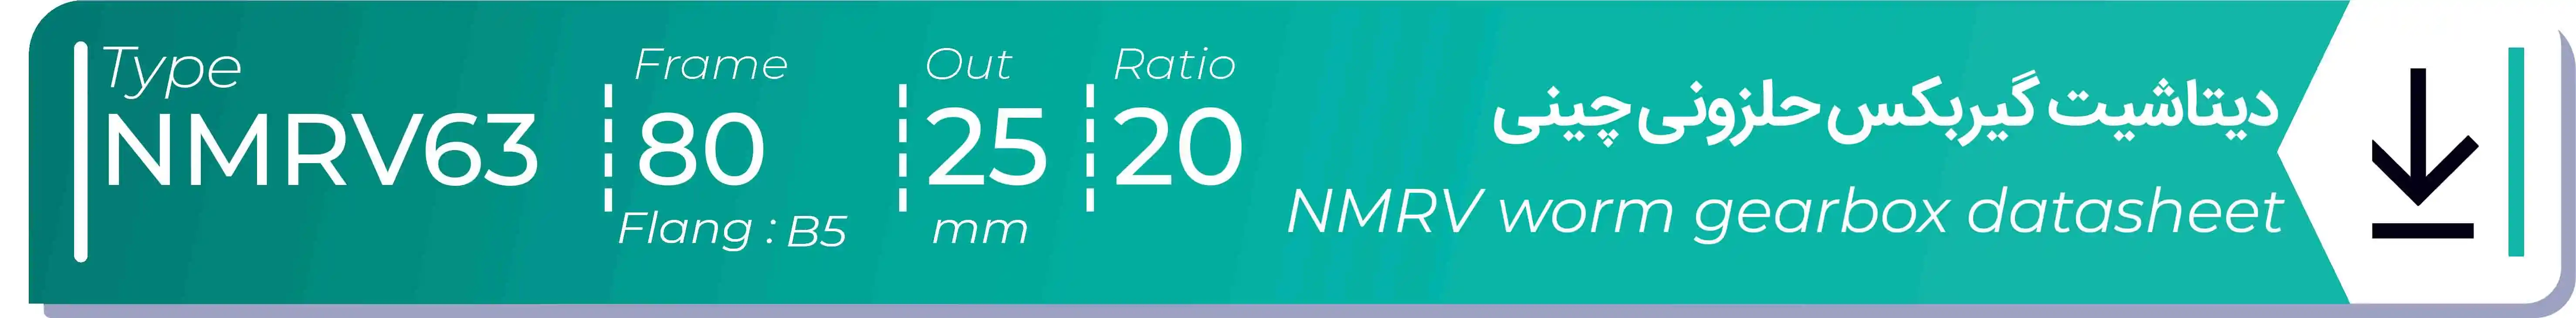  دیتاشیت و مشخصات فنی گیربکس حلزونی چینی   NMRV63  -  با خروجی 25- میلی متر و نسبت20 و فریم 80